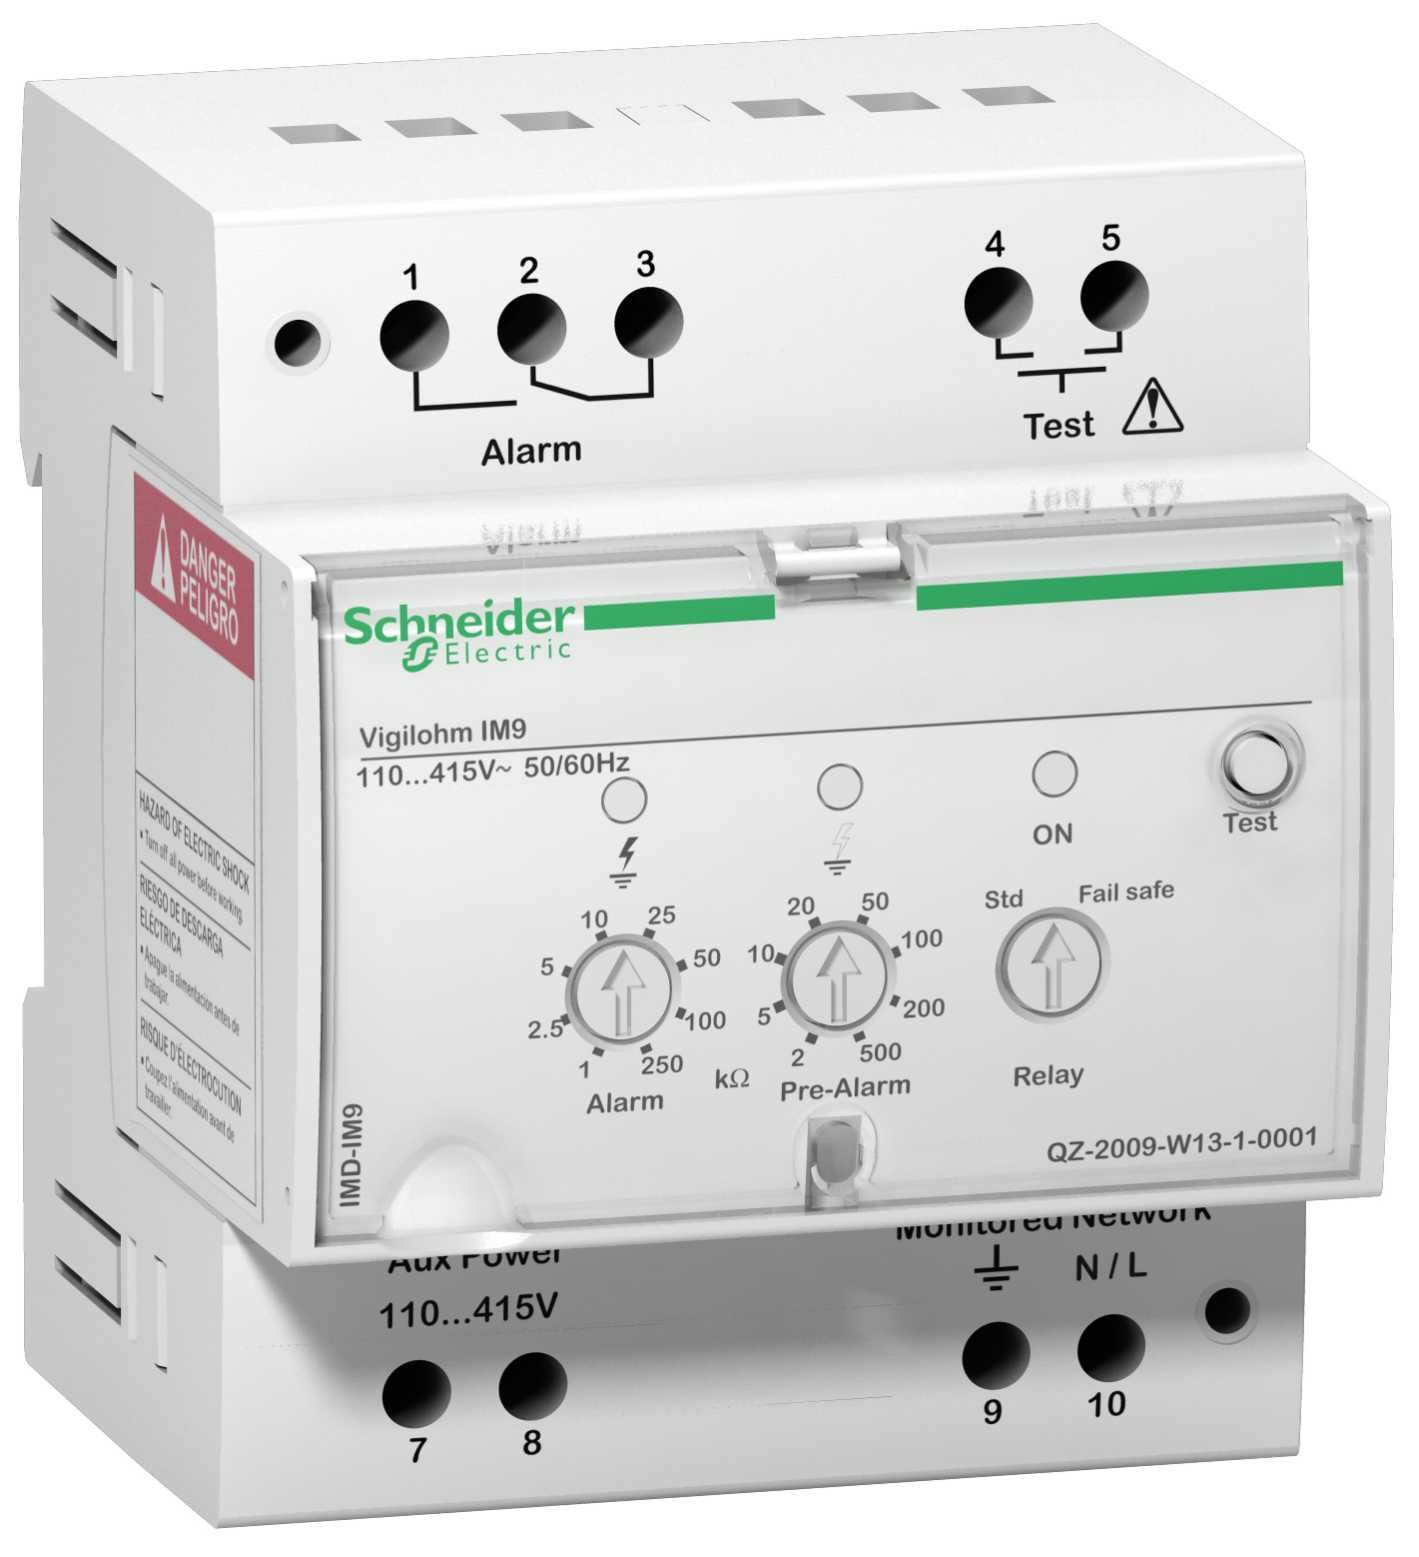 Schneider Electric - Vigilohm IM9. Isolasjonsovervåking for små anlegg